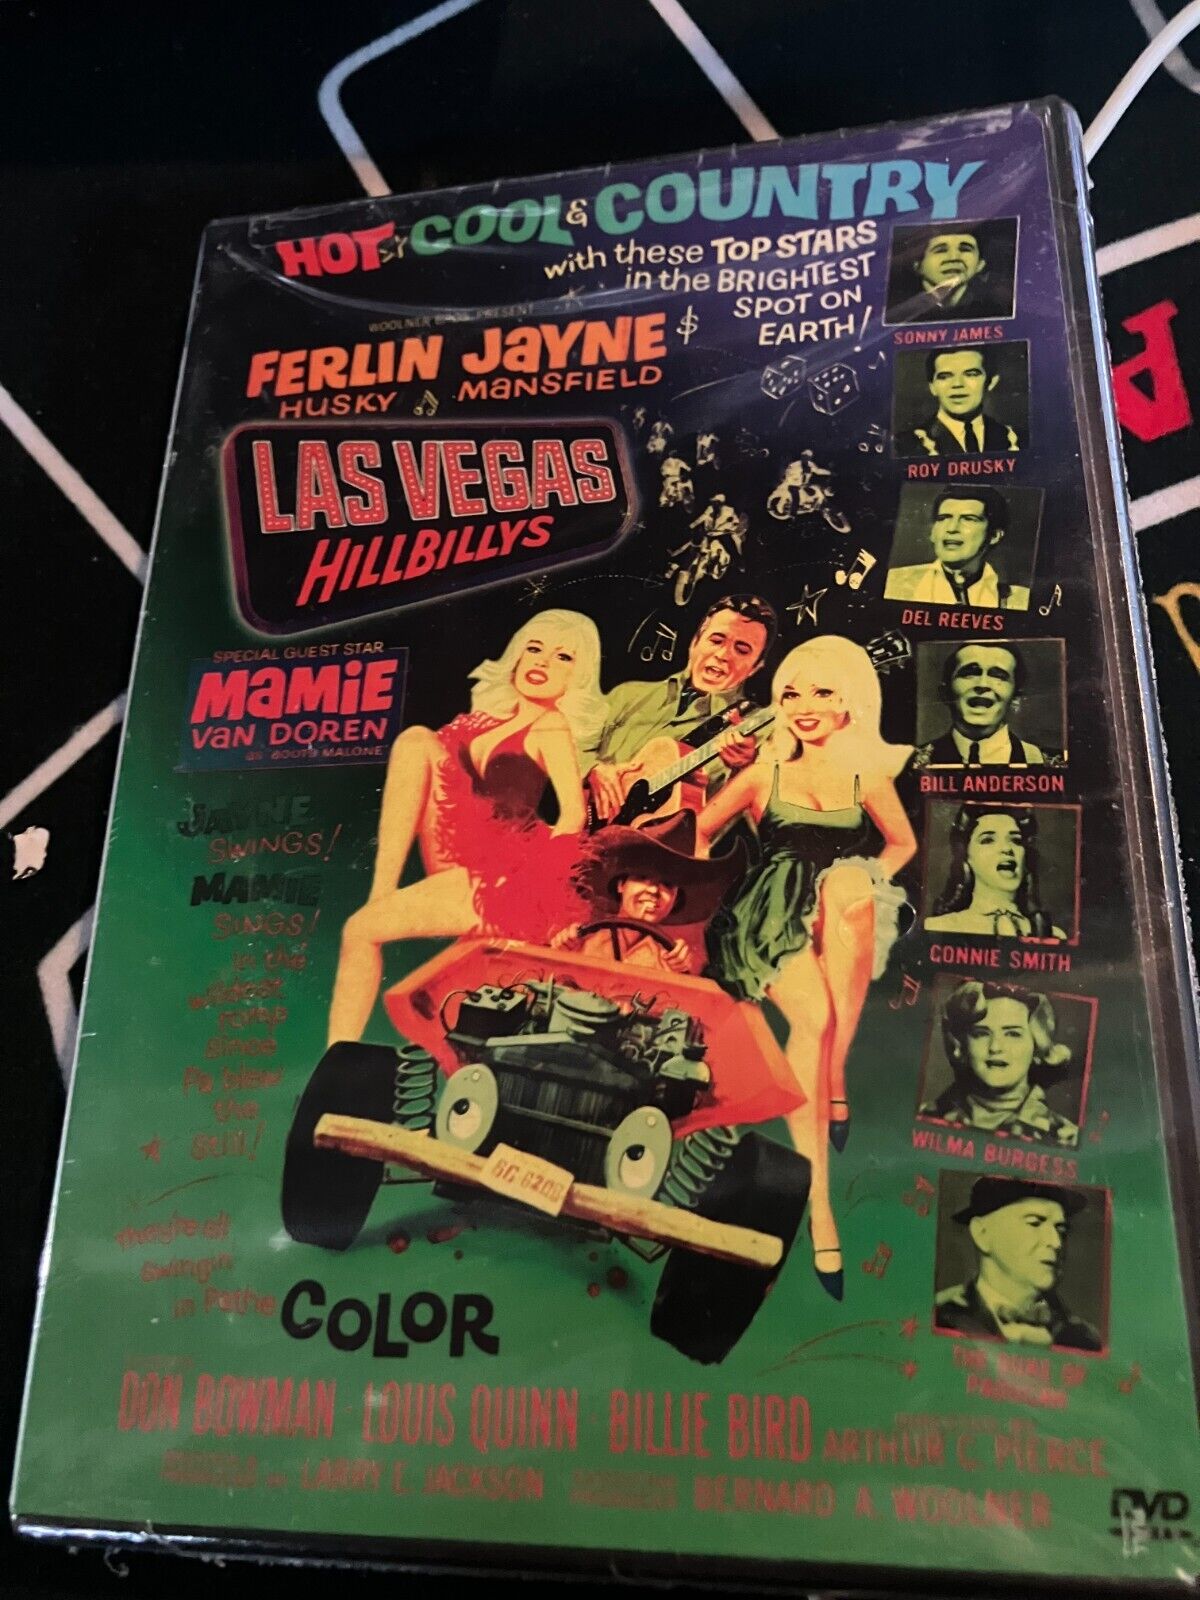 (NEW) Las Vegas Hillbillys DVD 1966 Jayne Mansfield Mamie Van Doren Hillbies